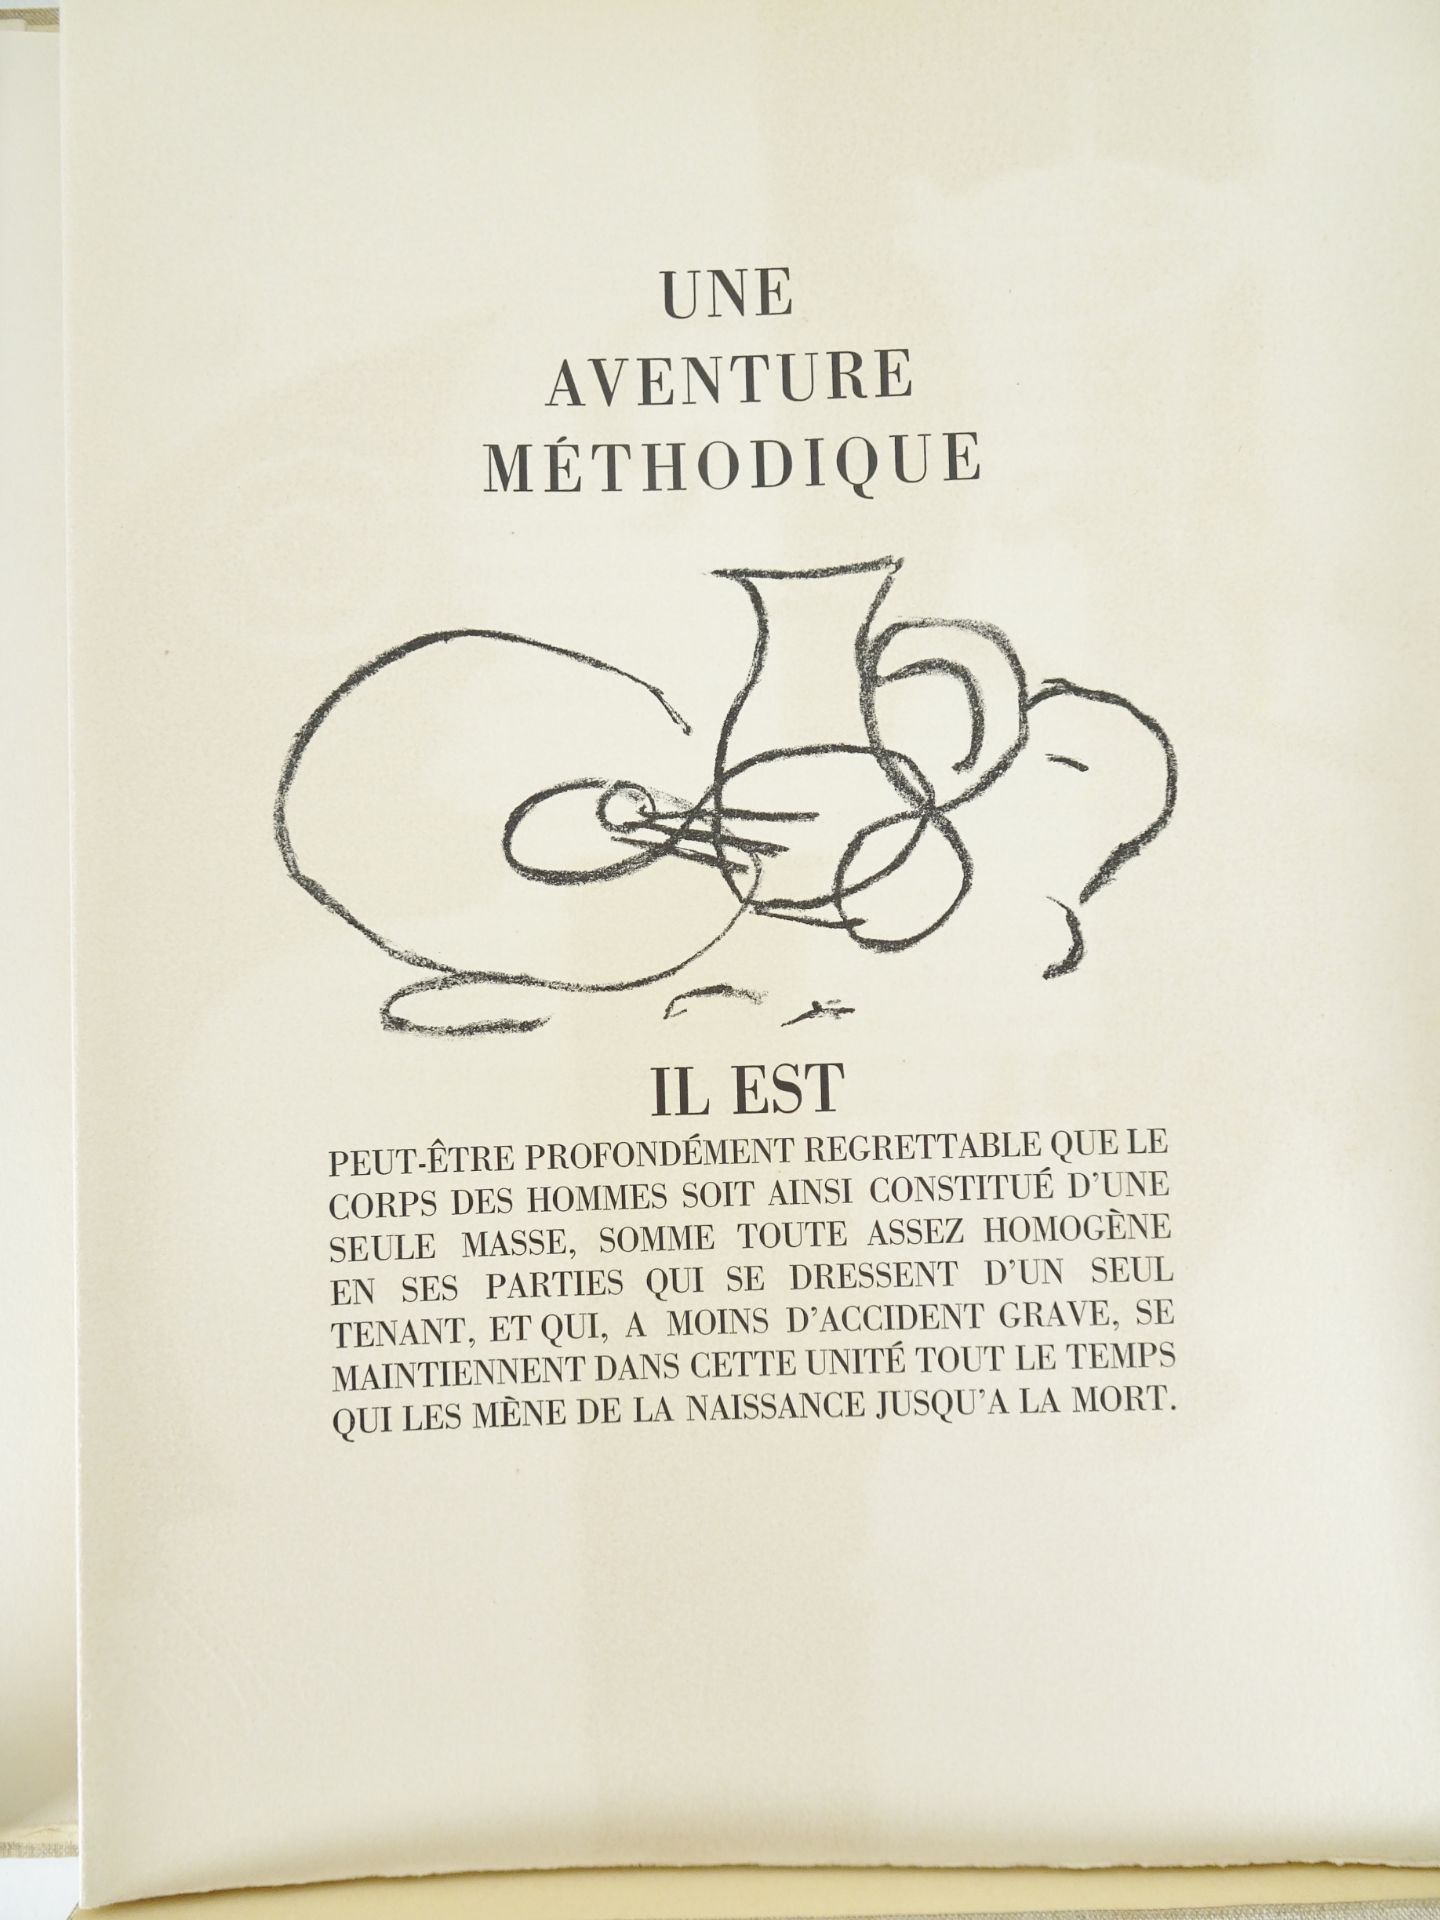 |Art| Braque George & REVERDY Pierre, "Une Aventure méthodique" - signé par l'artiste, 1950 - Image 5 of 17